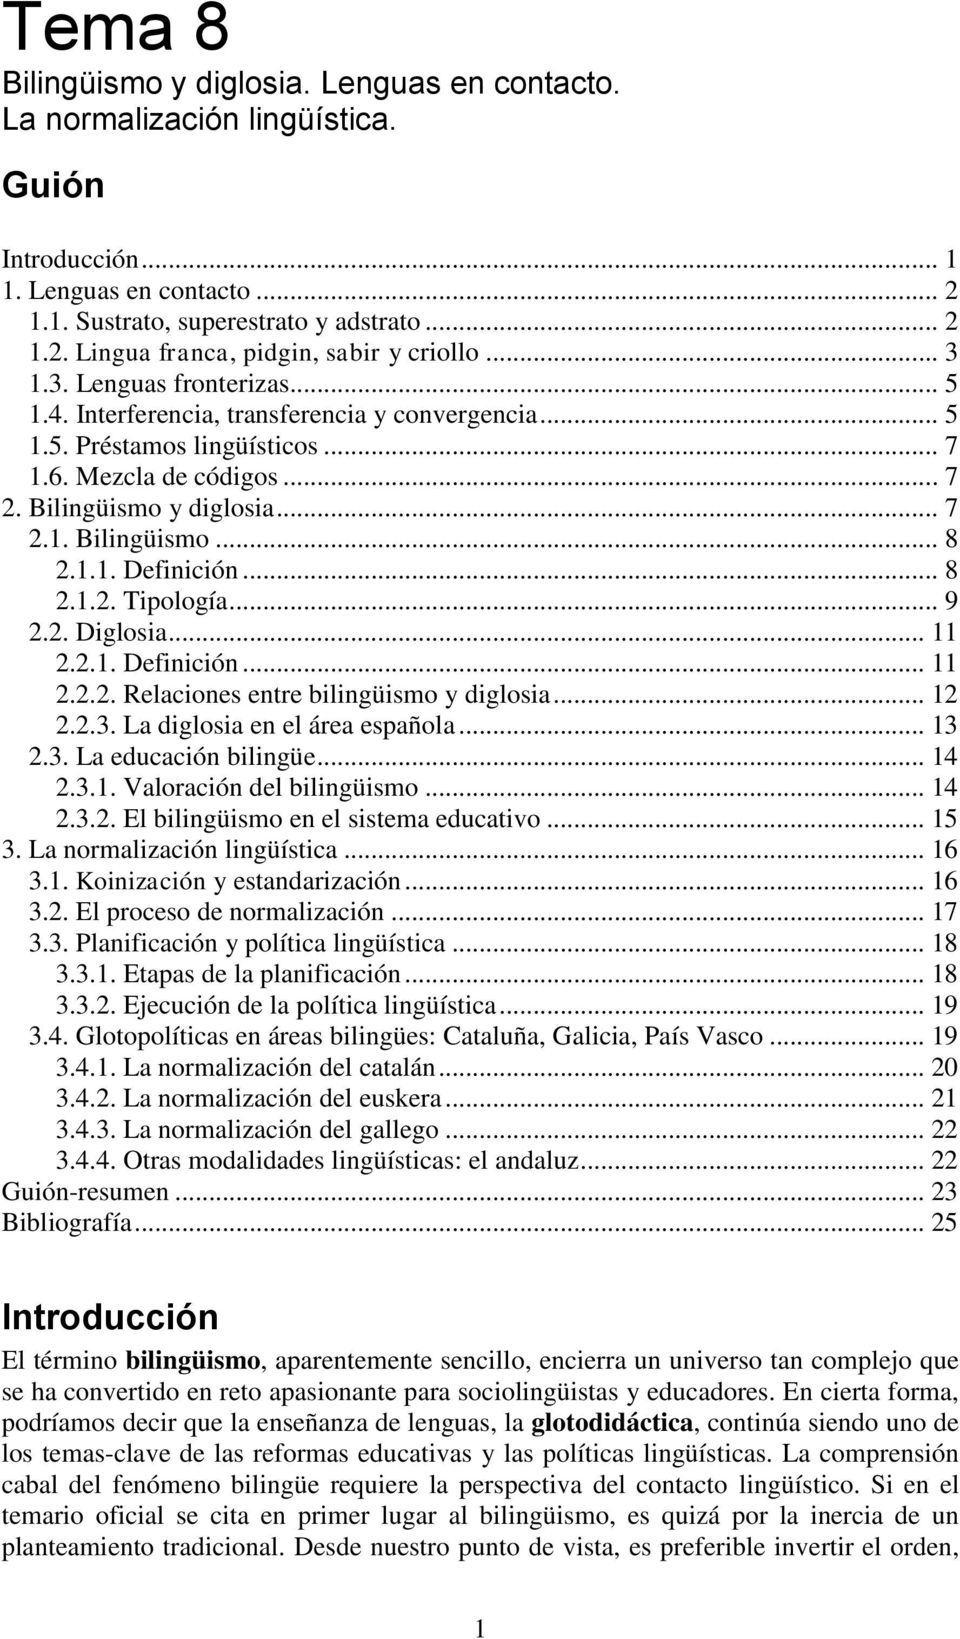 1.1. Definición... 8 2.1.2. Tipología... 9 2.2. Diglosia... 11 2.2.1. Definición... 11 2.2.2. Relaciones entre bilingüismo y diglosia... 12 2.2.3. La diglosia en el área española... 13 2.3. La educación bilingüe.